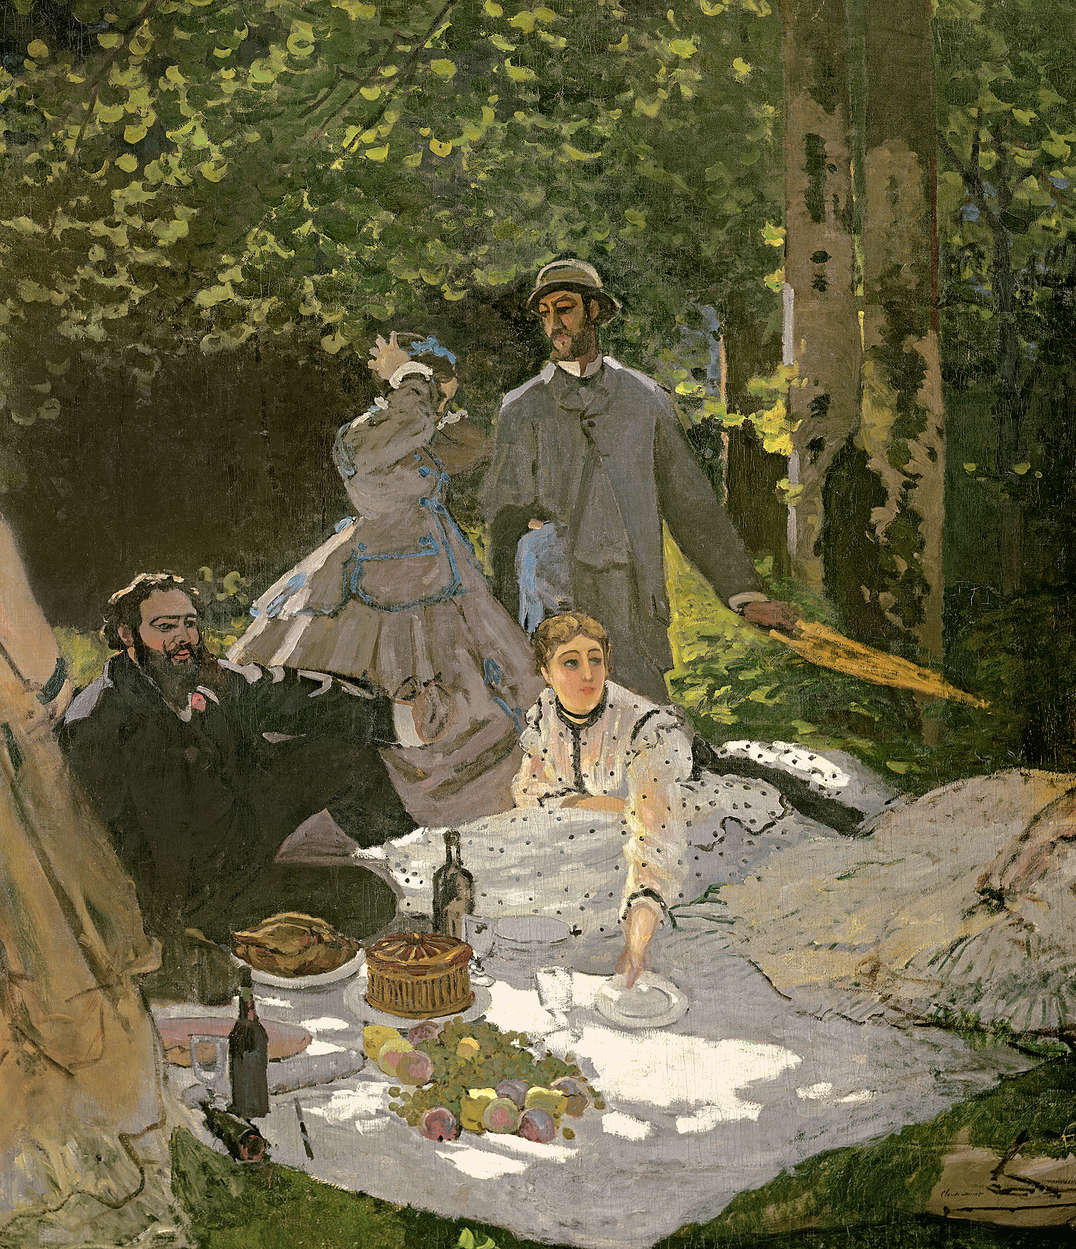             Muurschildering "Pad in de tuin van Monet in Giverny" van Claude Monet
        